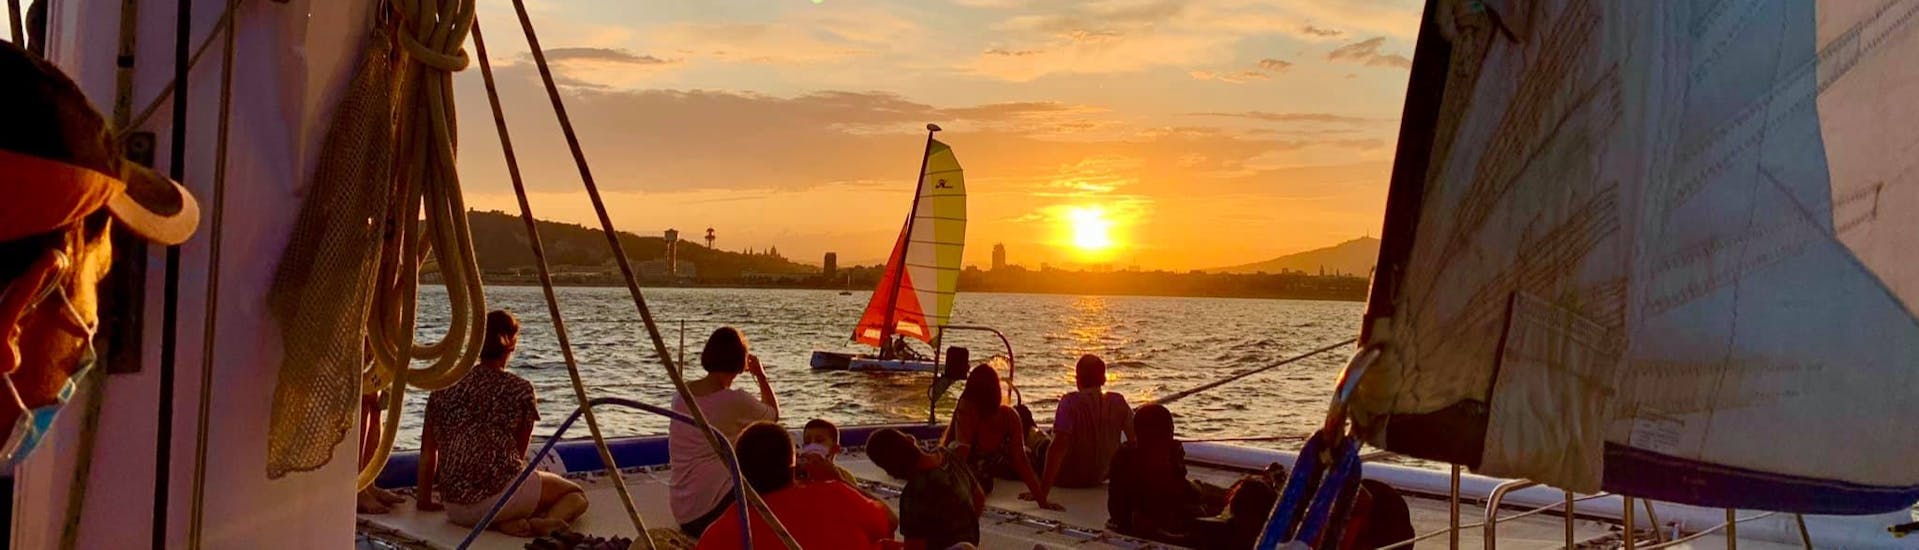 Mensen genieten van een zonsondergang tijdens een zonsondergang catamarantrip rond Barcelona met Catamaran Orsom Gotland Charter.